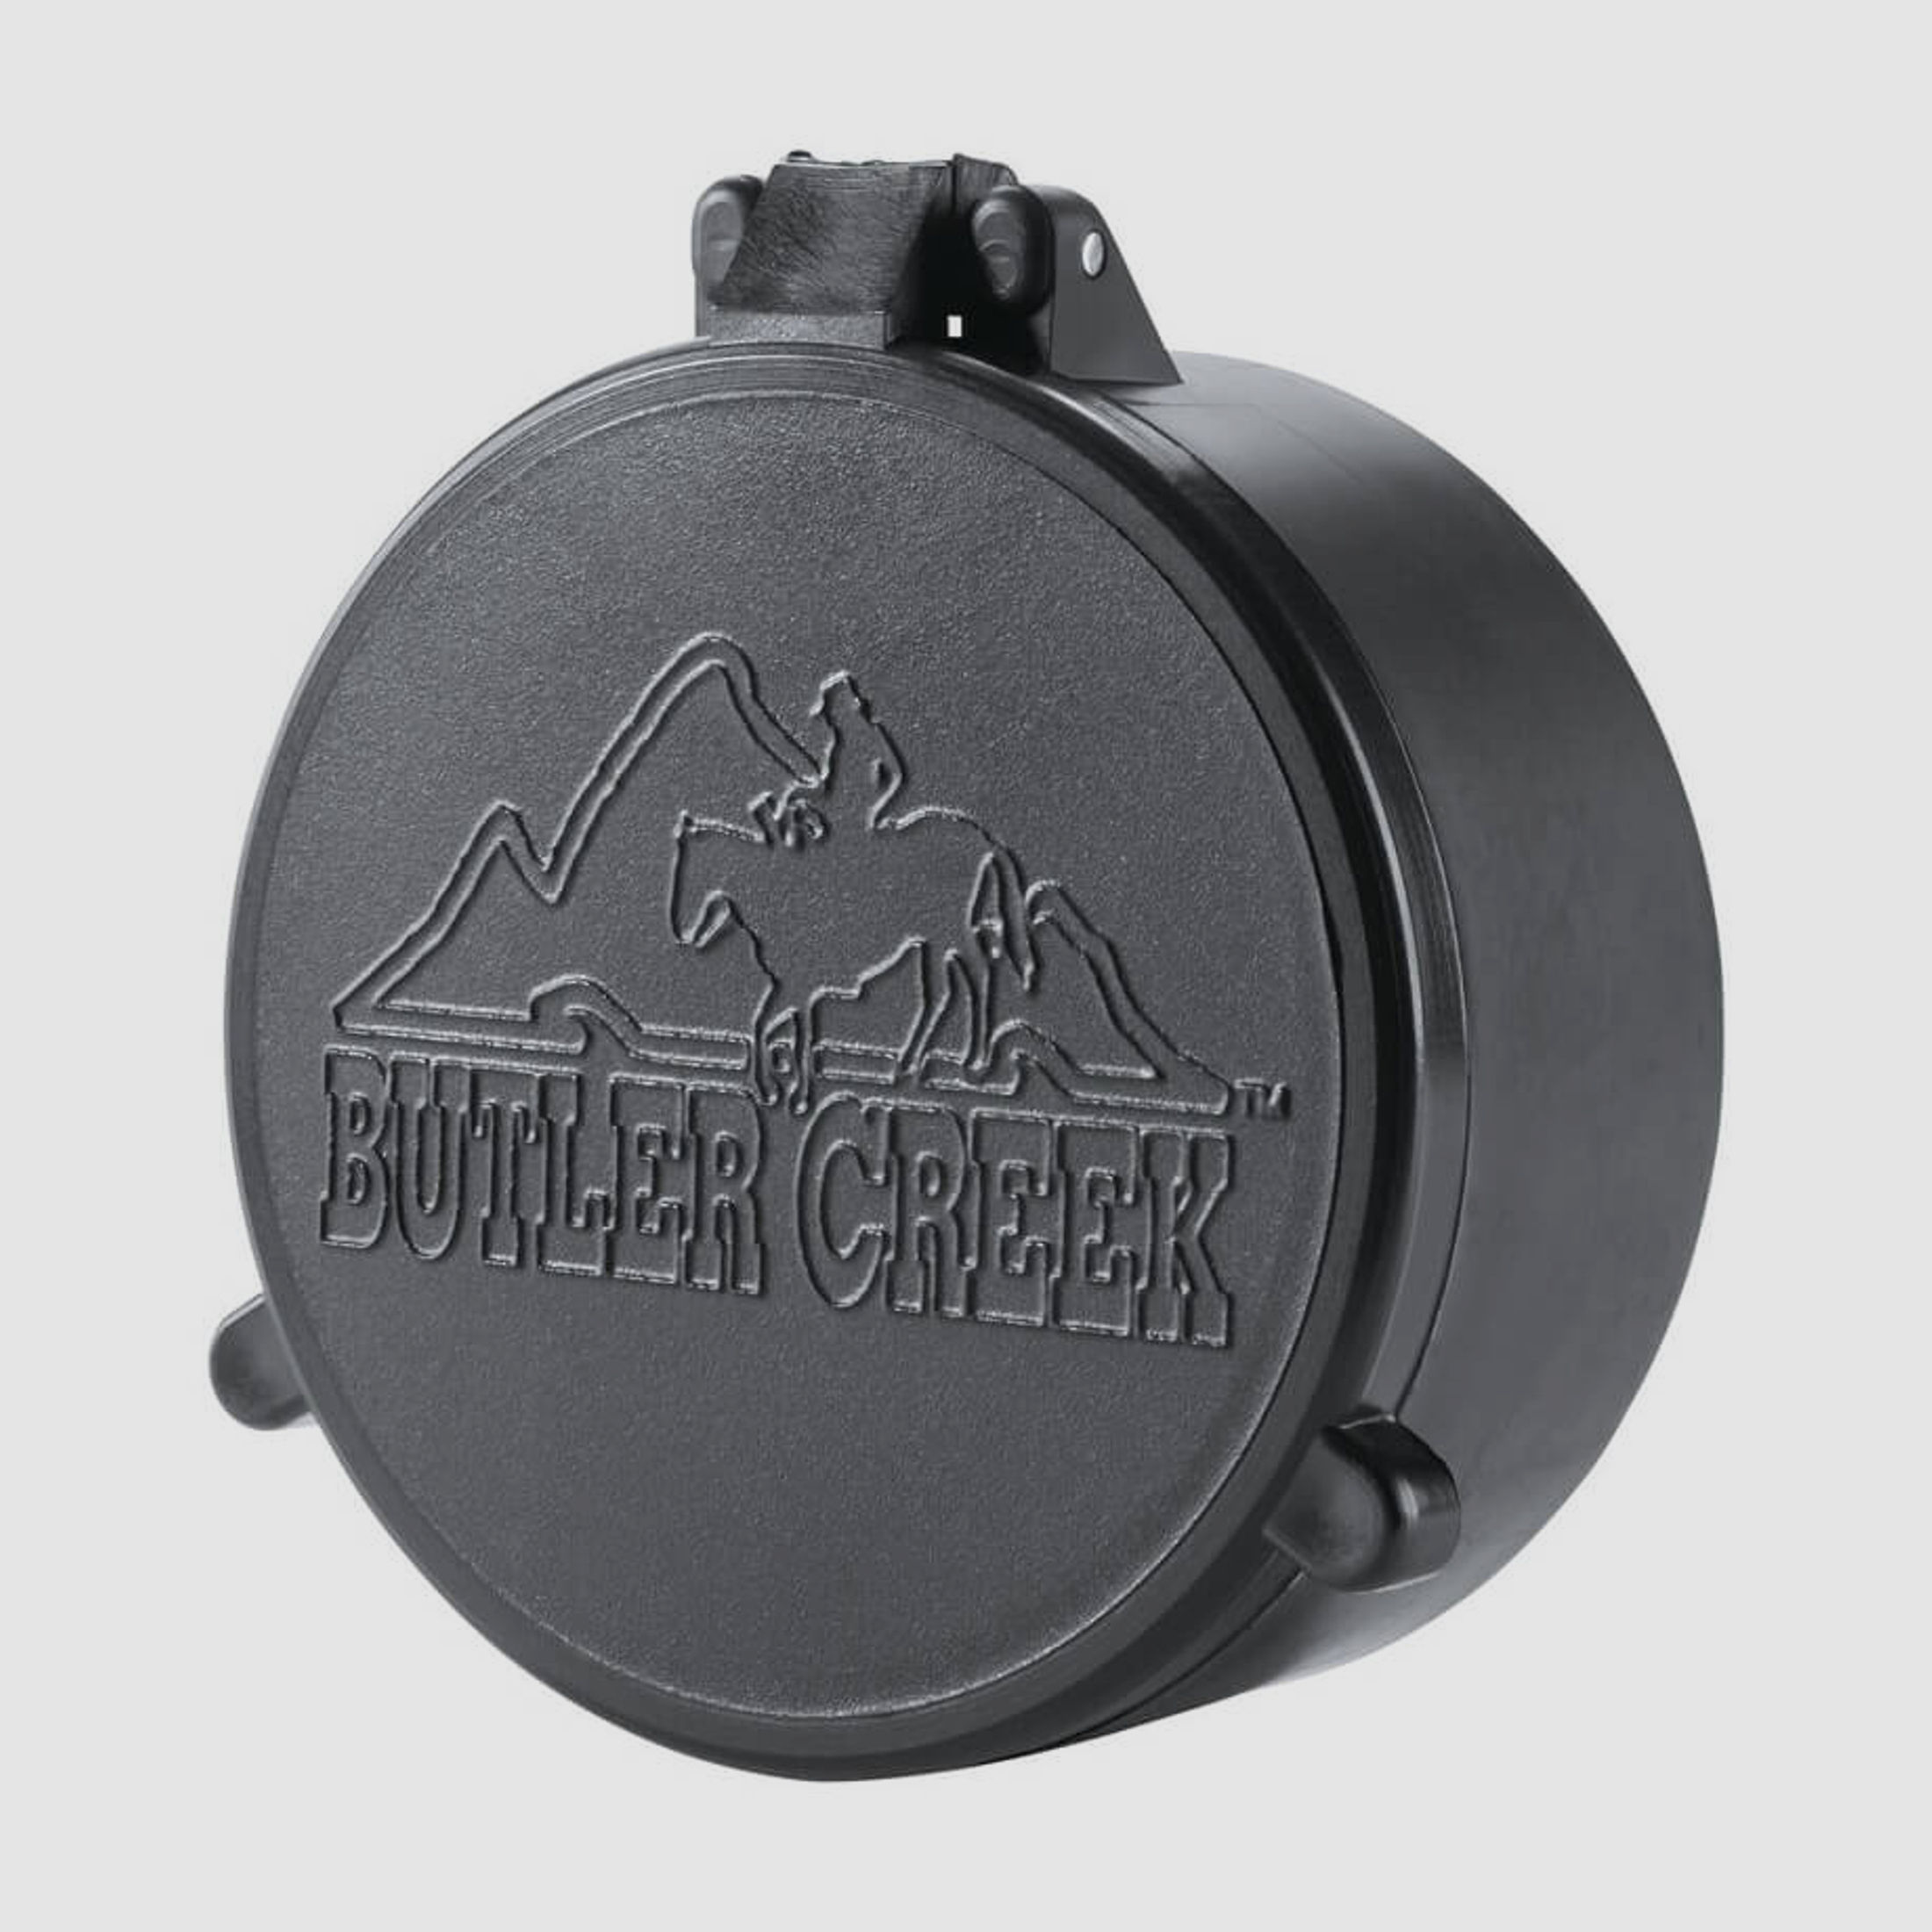 Butler Creek Objektiv Schutzkappe - 46,2mm